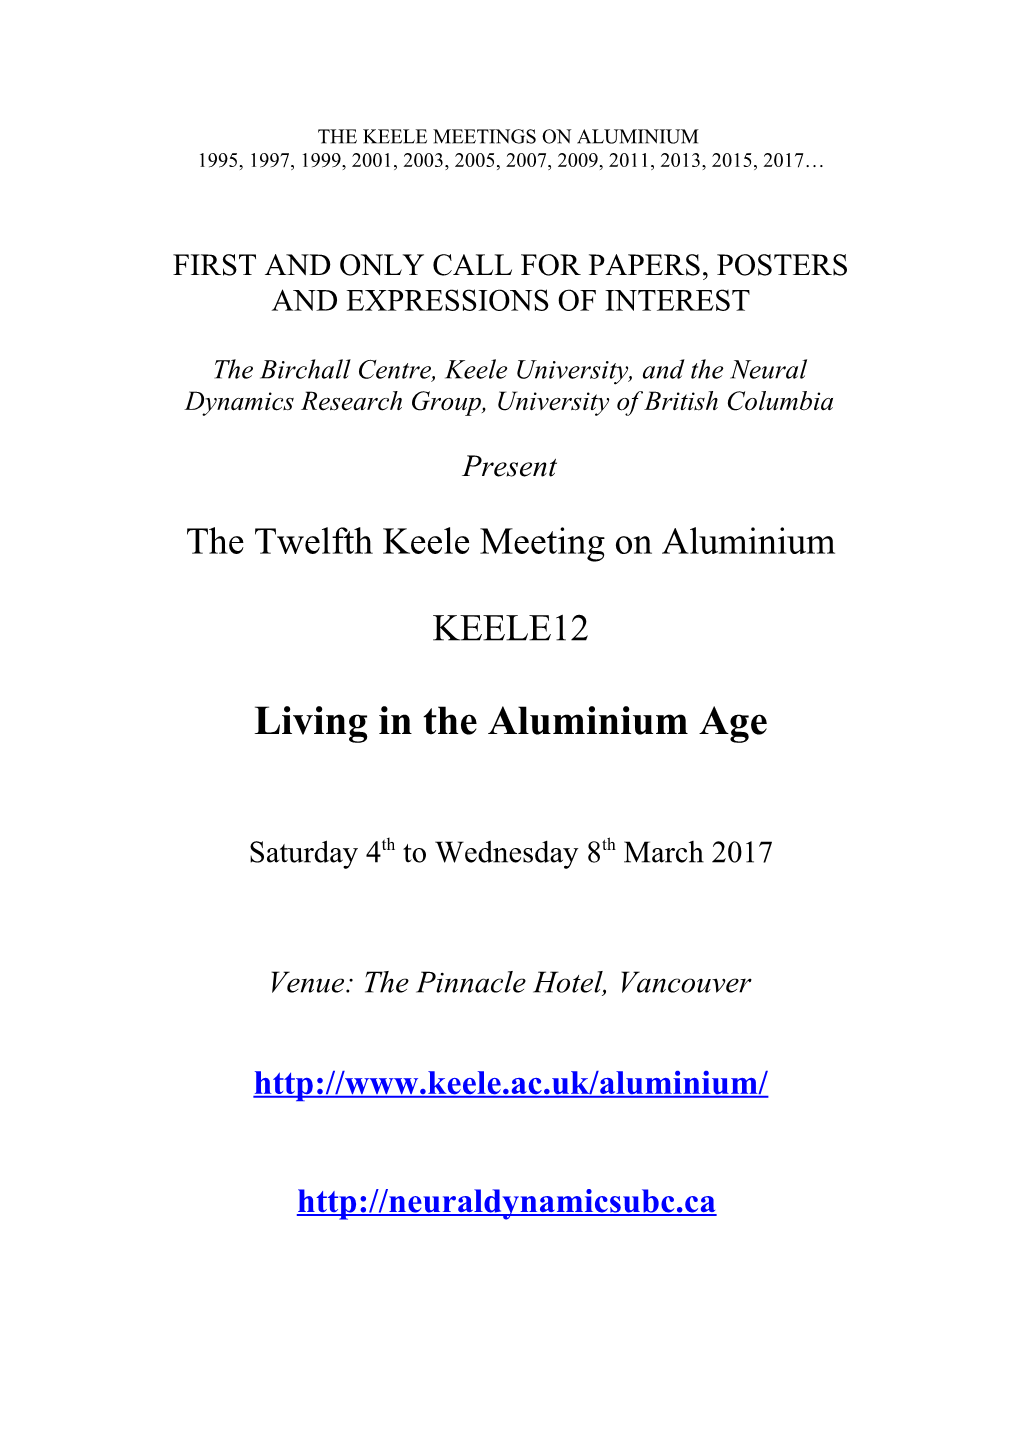 The Keele Meetings on Aluminium 1995, 1997, 1999, 2001, 2003, 2005